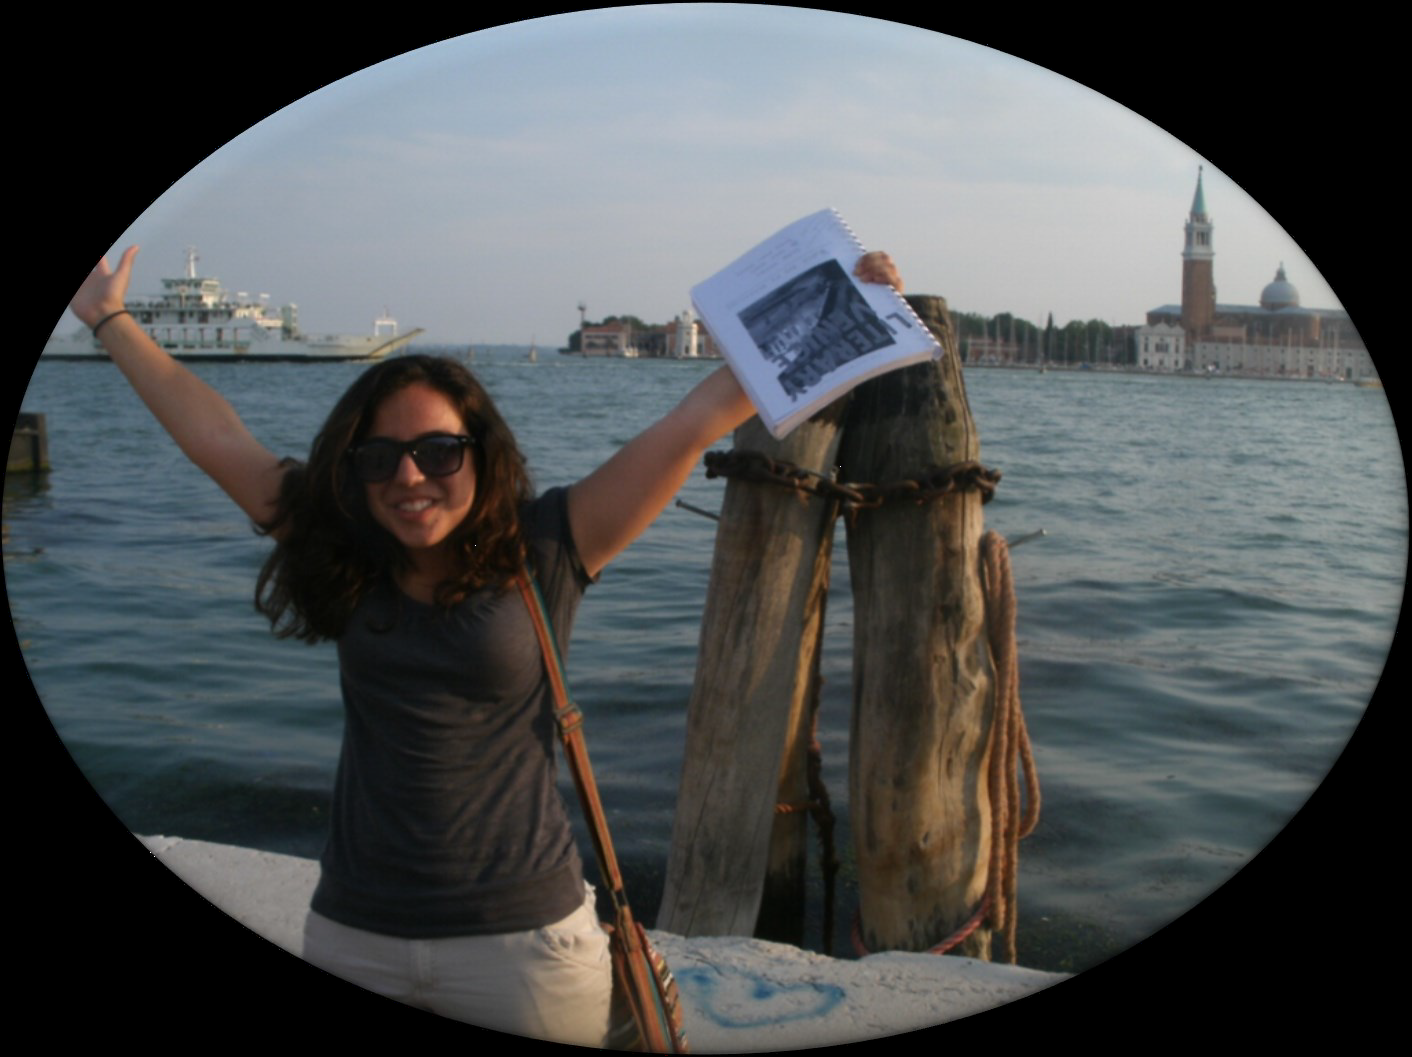 Student in Venice